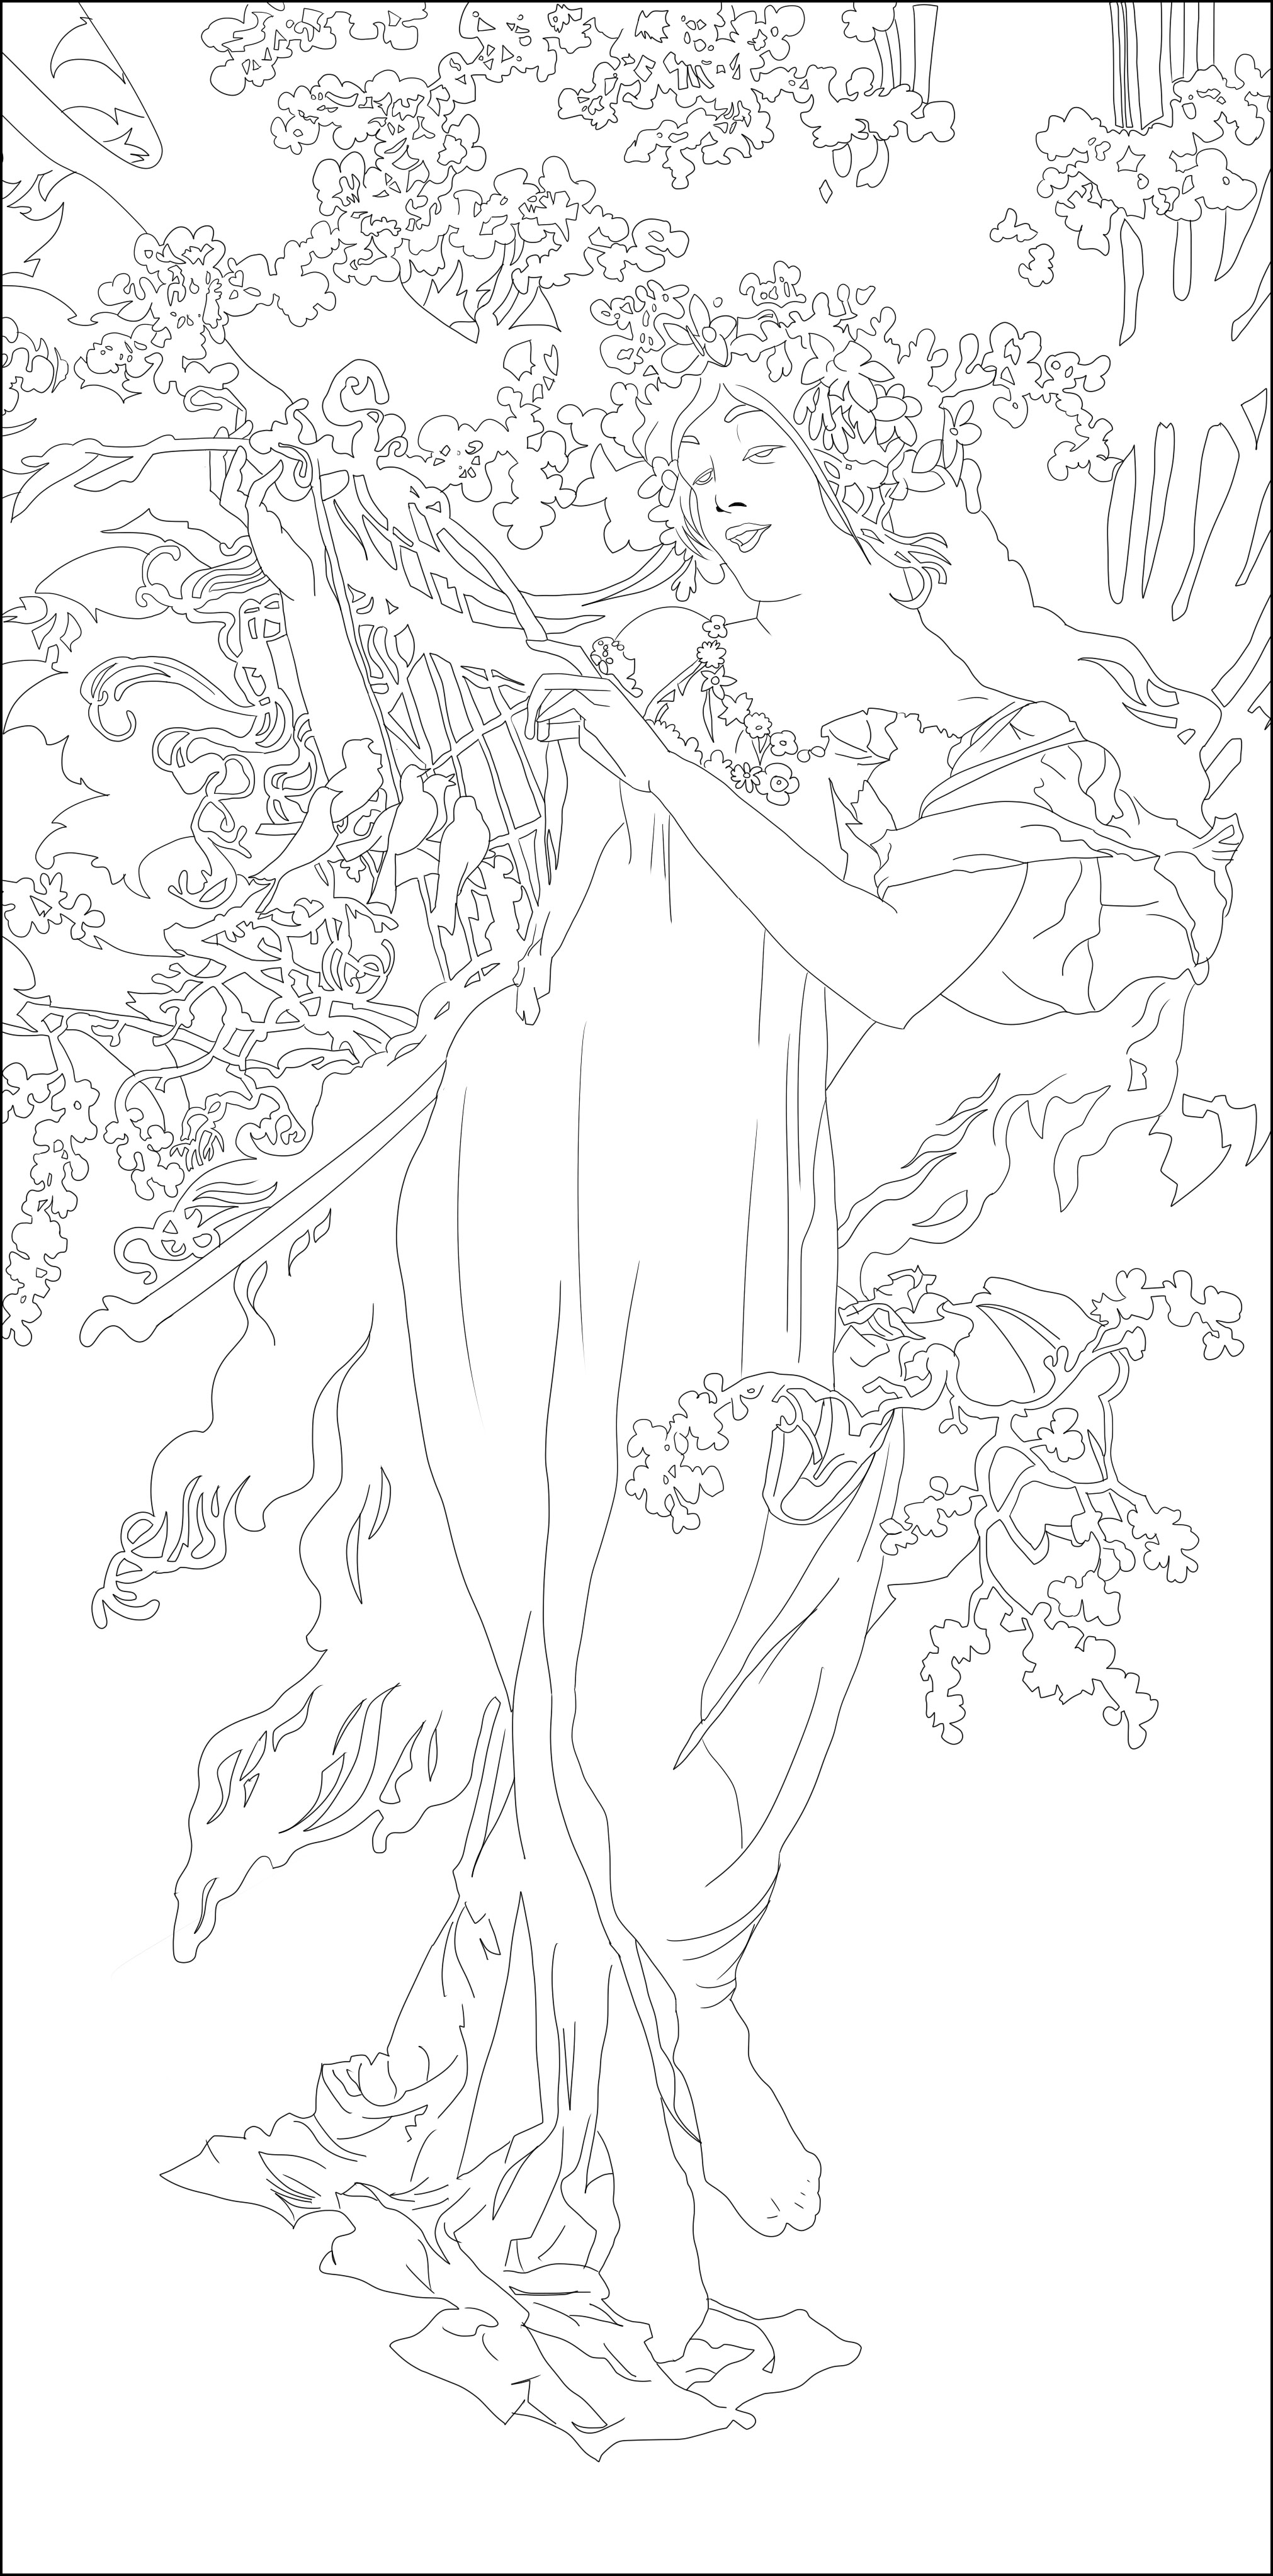 Página para colorir inspirada na obra 'Printemps' de Alfons MuchaMulher elegante do início do século, sozinha mas rodeada de uma bonita vegetação